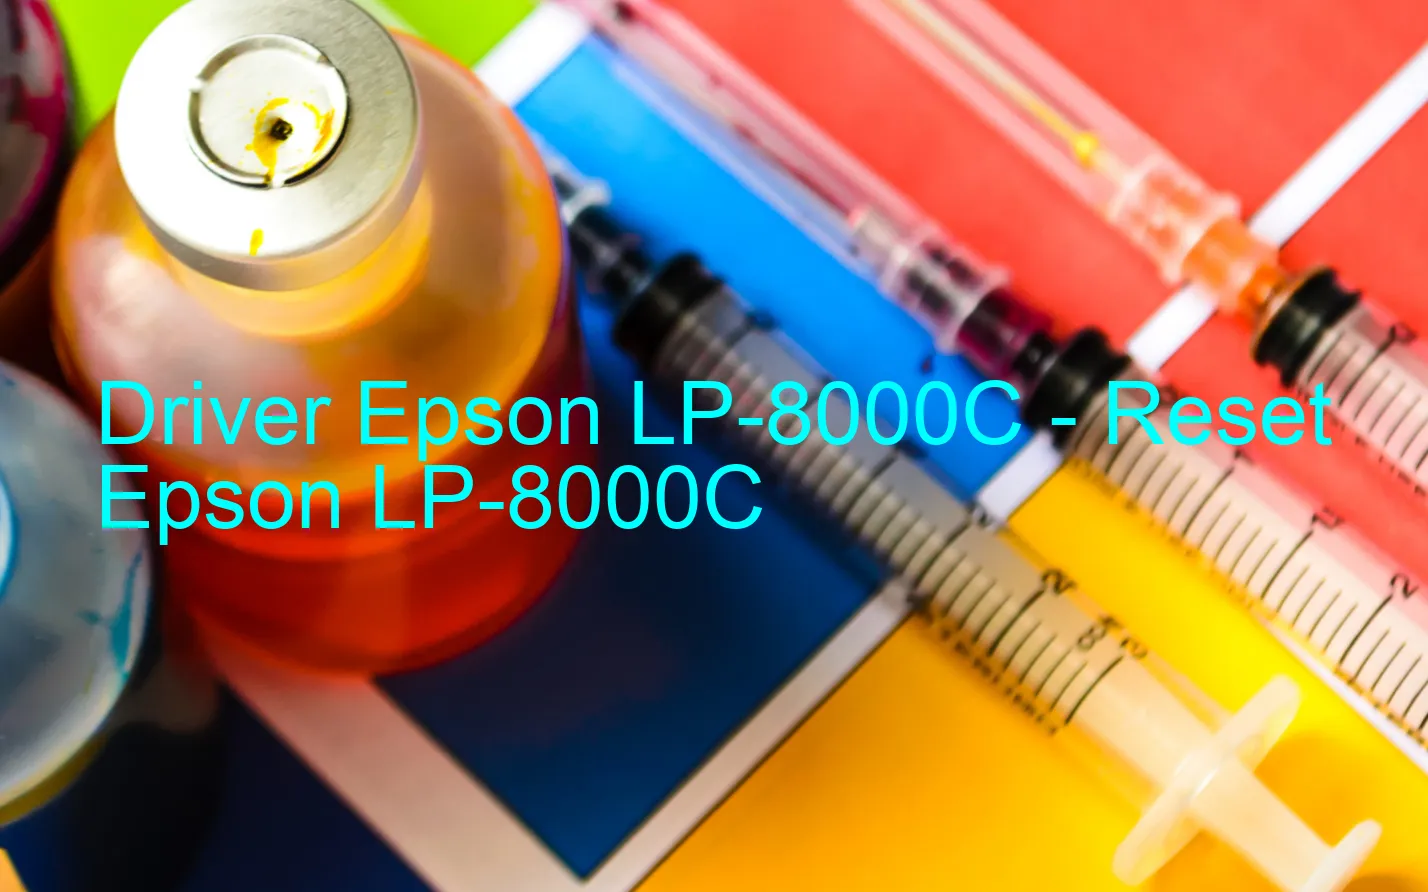 Epson LP-8000Cのドライバー、Epson LP-8000Cのリセットソフトウェア